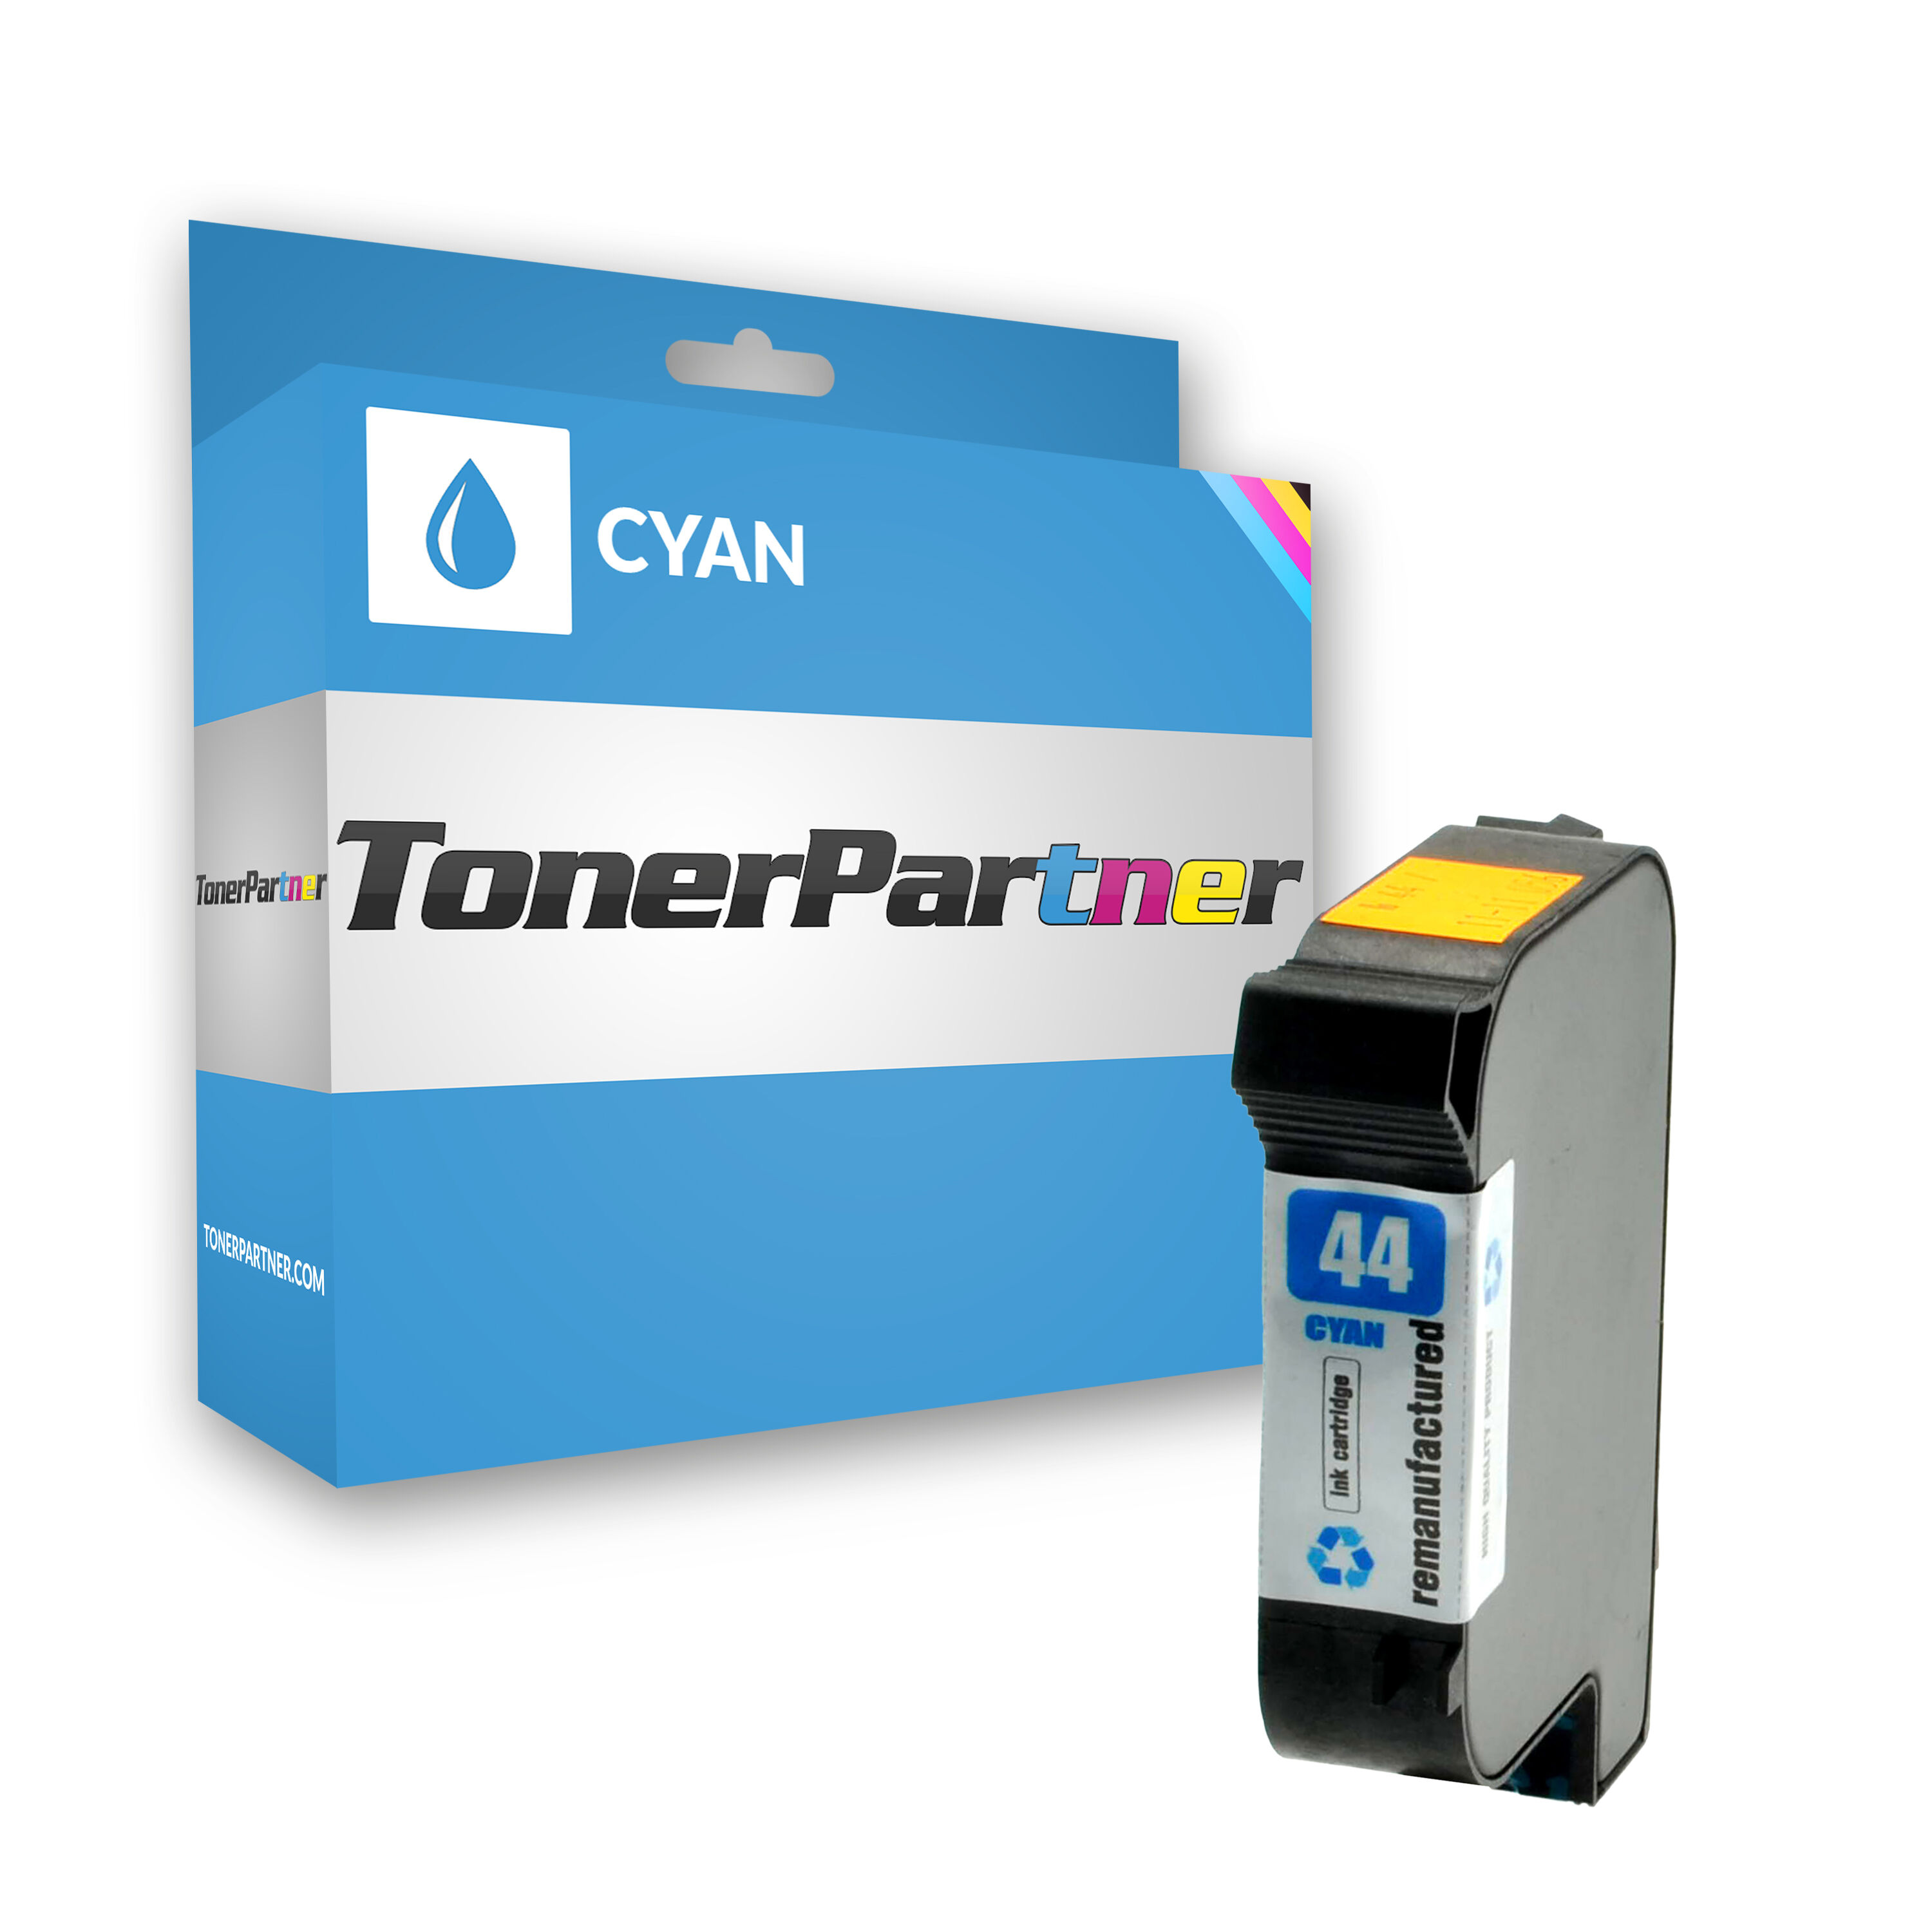 TonerPartner Kompatibel zu HP DesignJet 450 Series Tintenpatrone (44 / 51644 CE) cyan, 1.600 Seiten, 1,59 Rp pro Seite, Inhalt: 42 ml von TonerPartner